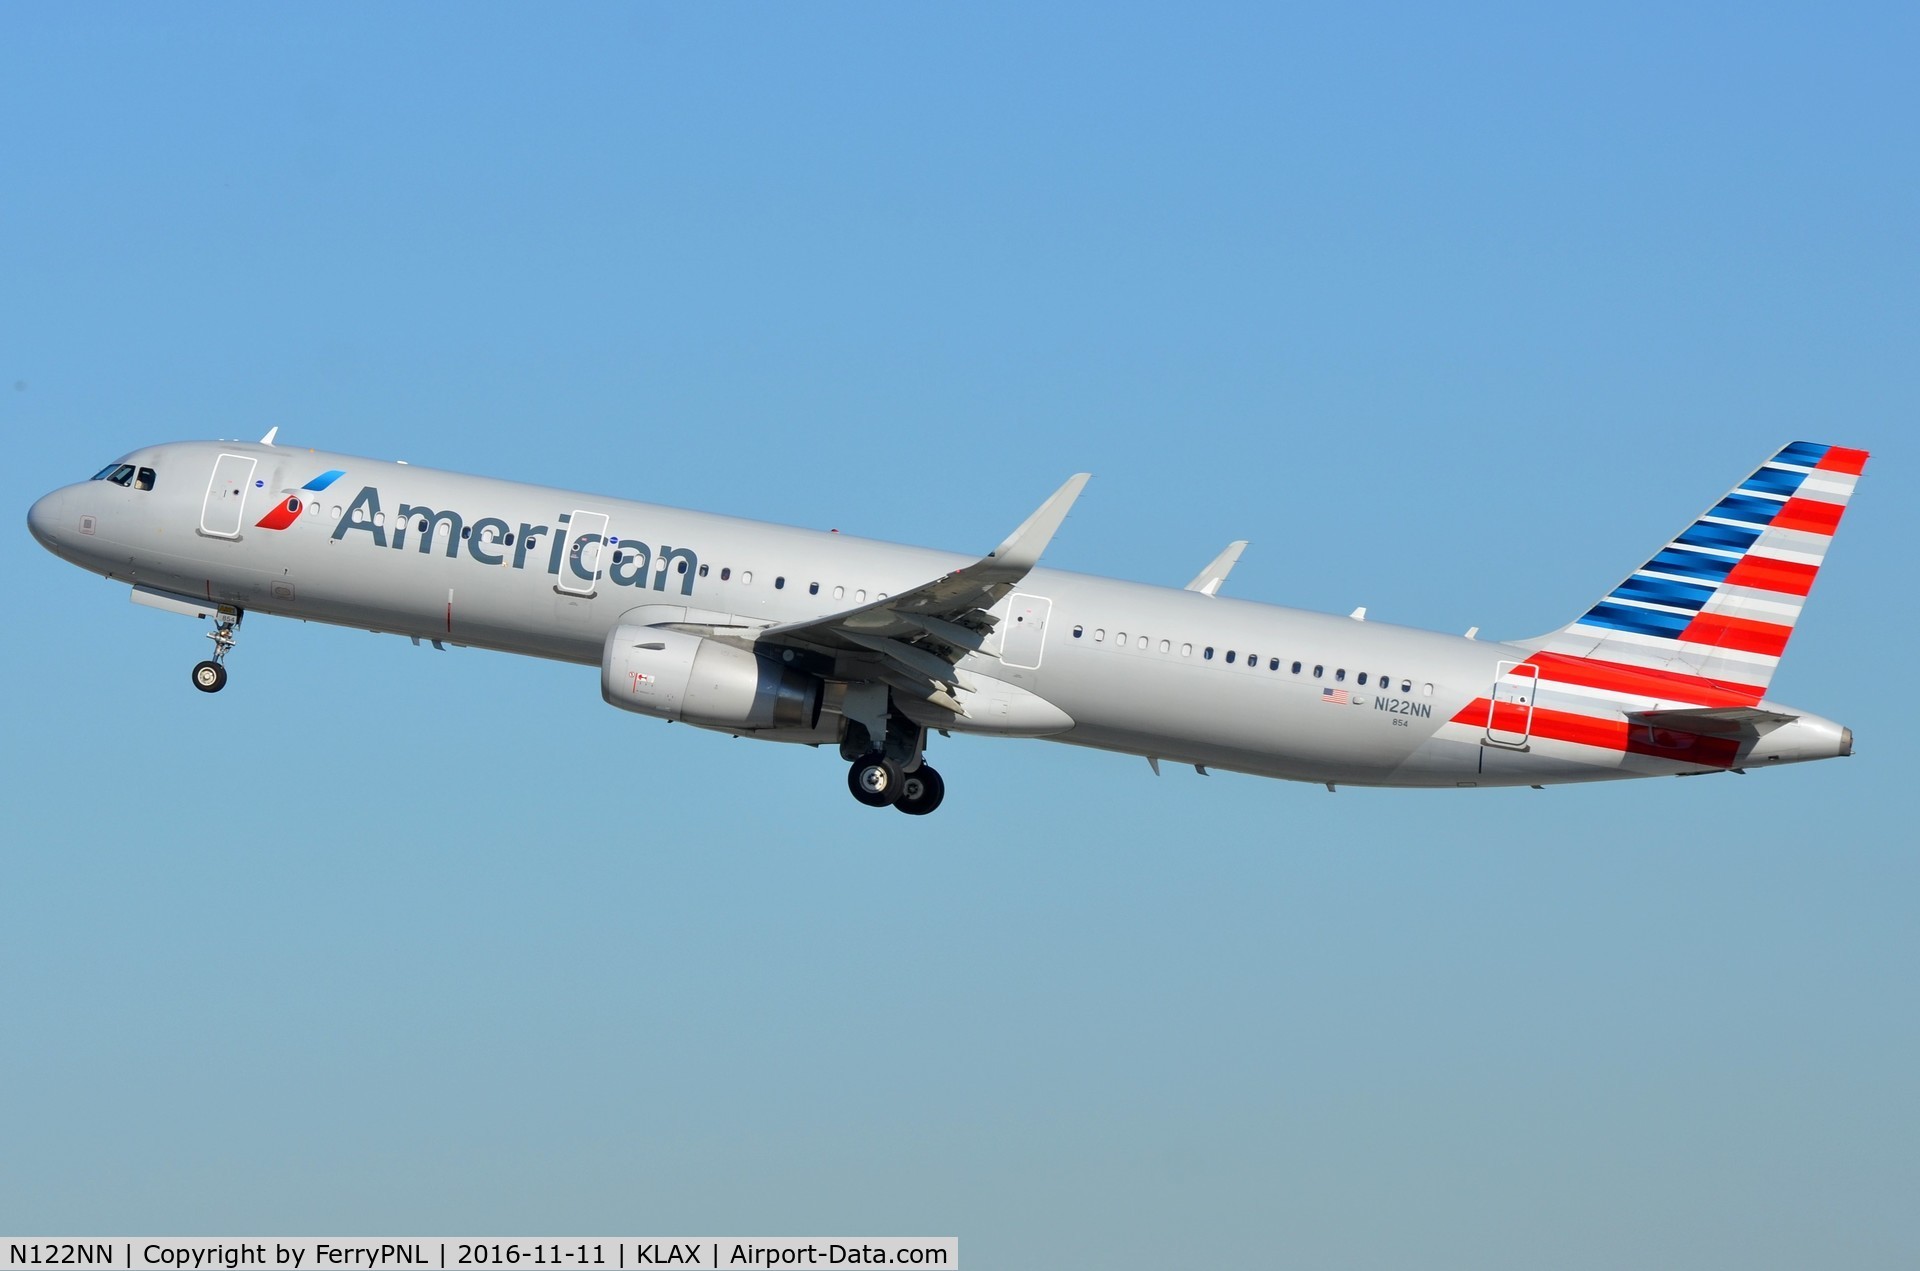 N122NN, 2014 Airbus A321-231 C/N 6252, American A321 departing